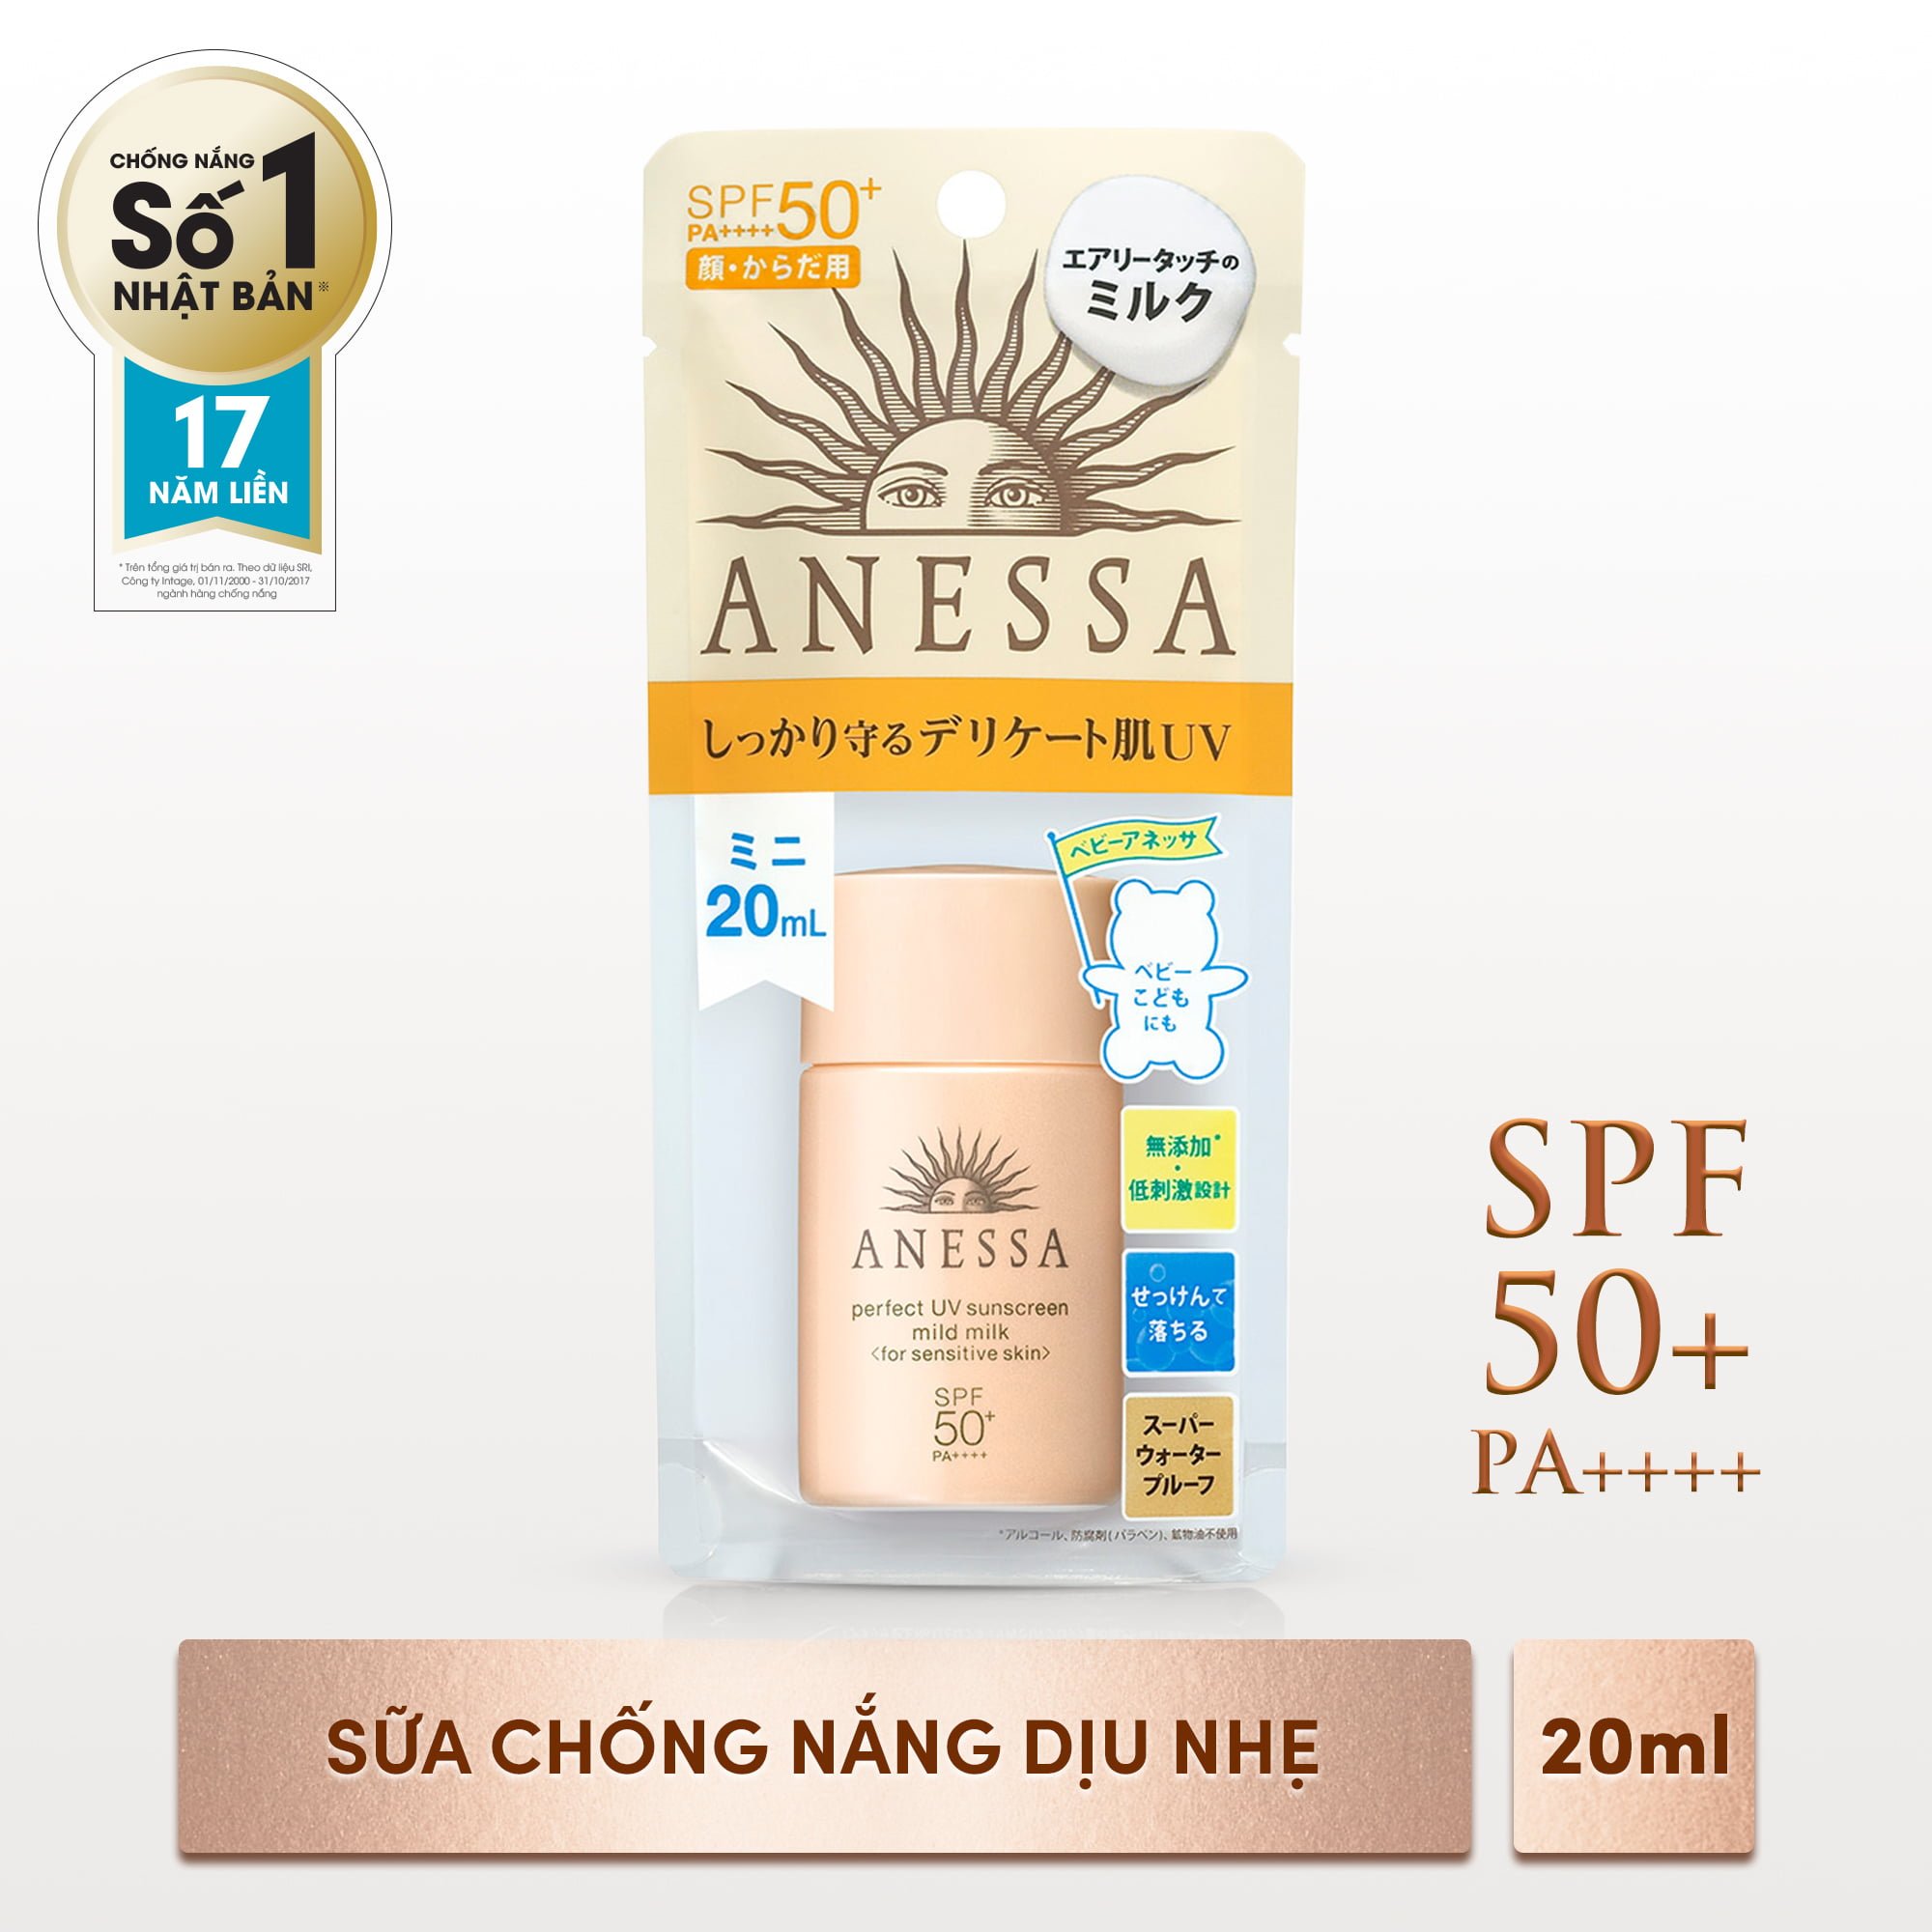 Sữa chống nắng dịu nhẹ anessa perfect uv sunscreen mild milk 20ml